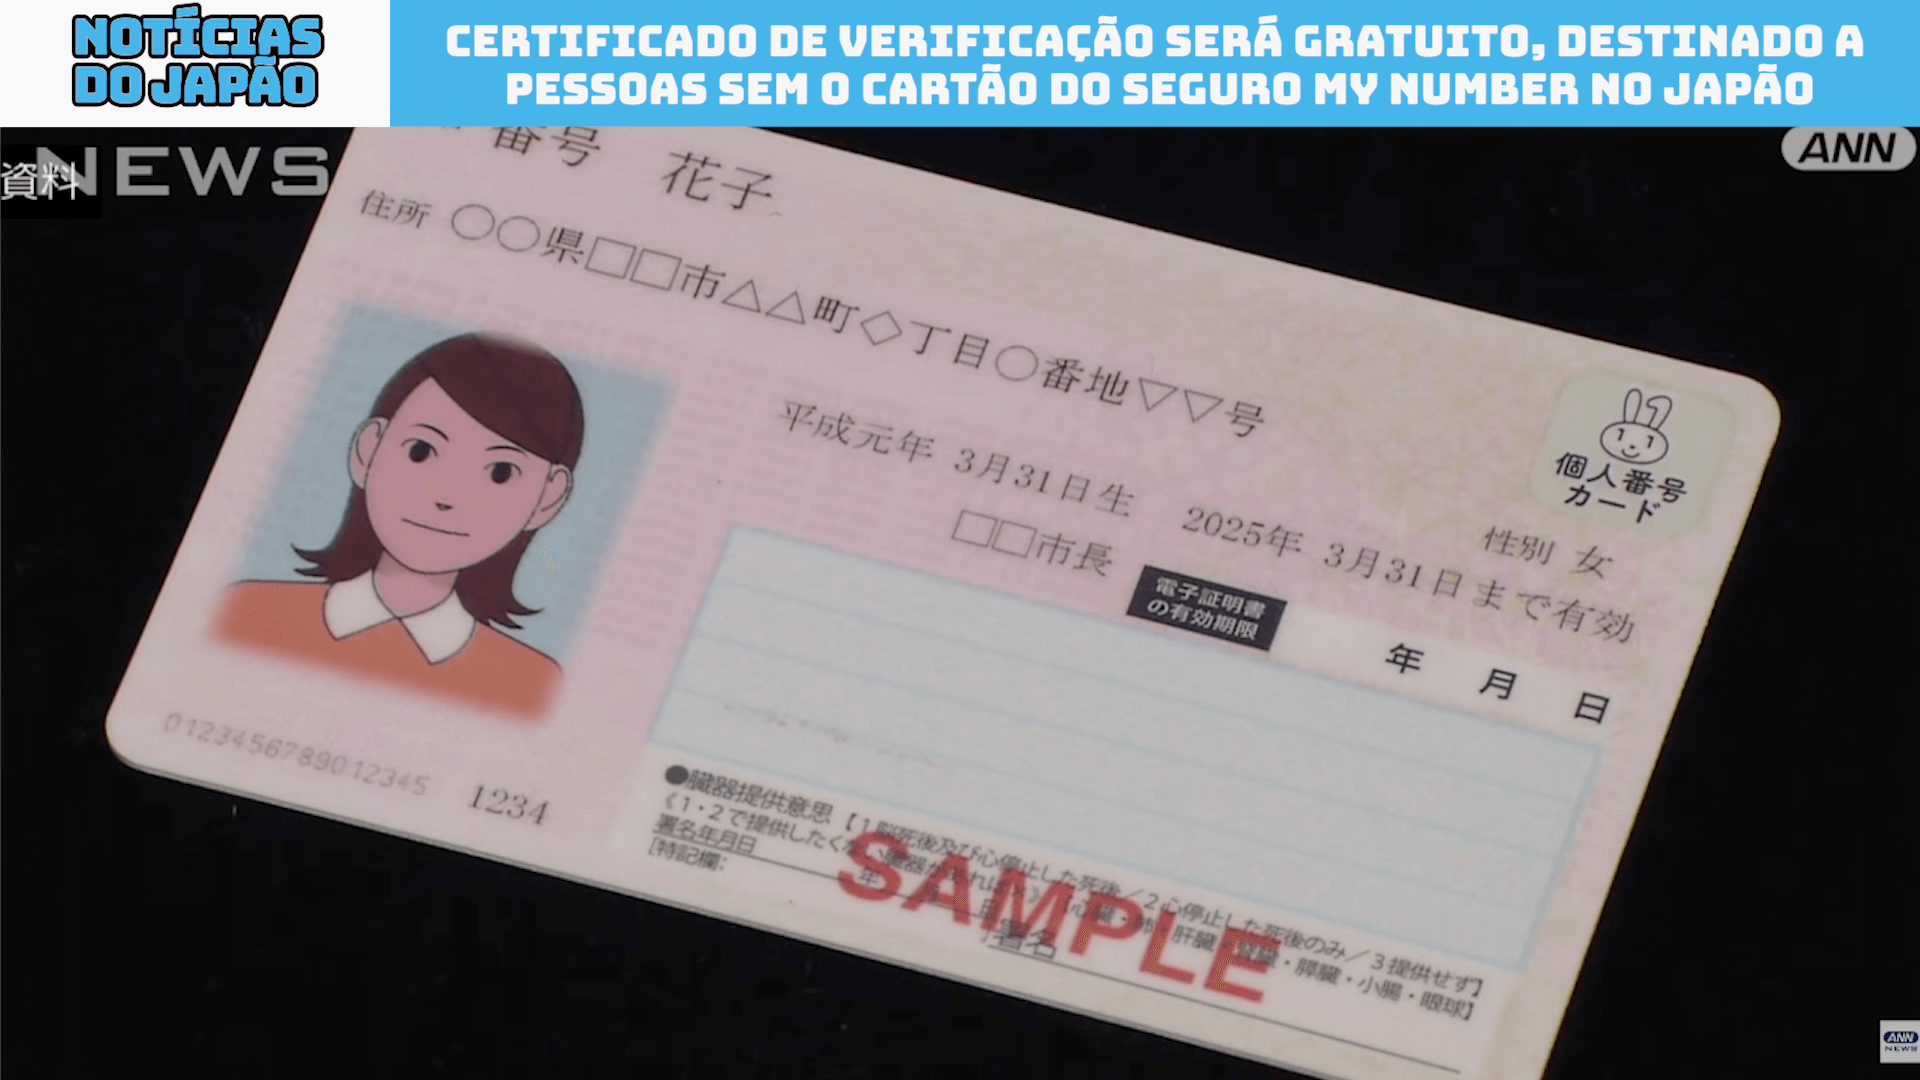 Certificado de Verificação será gratuito, destinado a pessoas sem o cartão do seguro My Number no Japão 